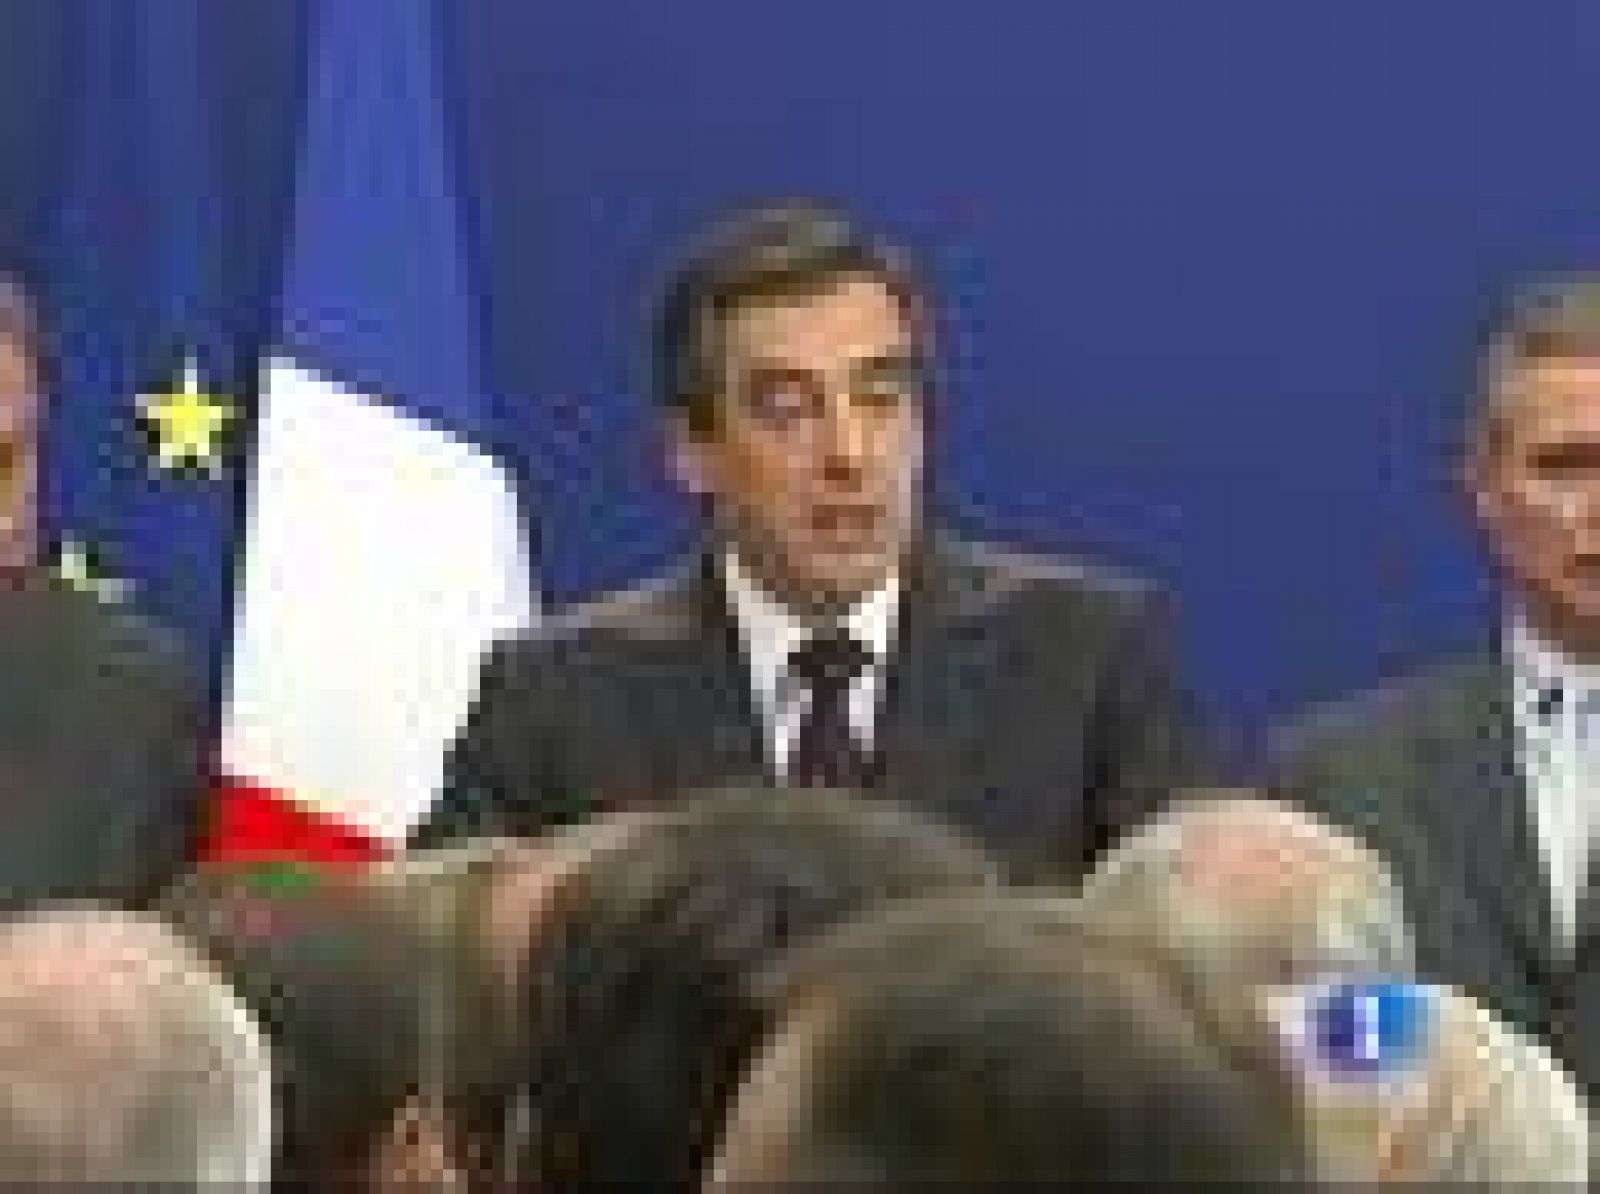 La Fiscalía va a investigar las acusaciones de financiación ilegal de la campaña presidencial de Sarkozy. El tesorero de esa campaña y actual ministro de Trabajo ha presentado una denuncia por calumnias.